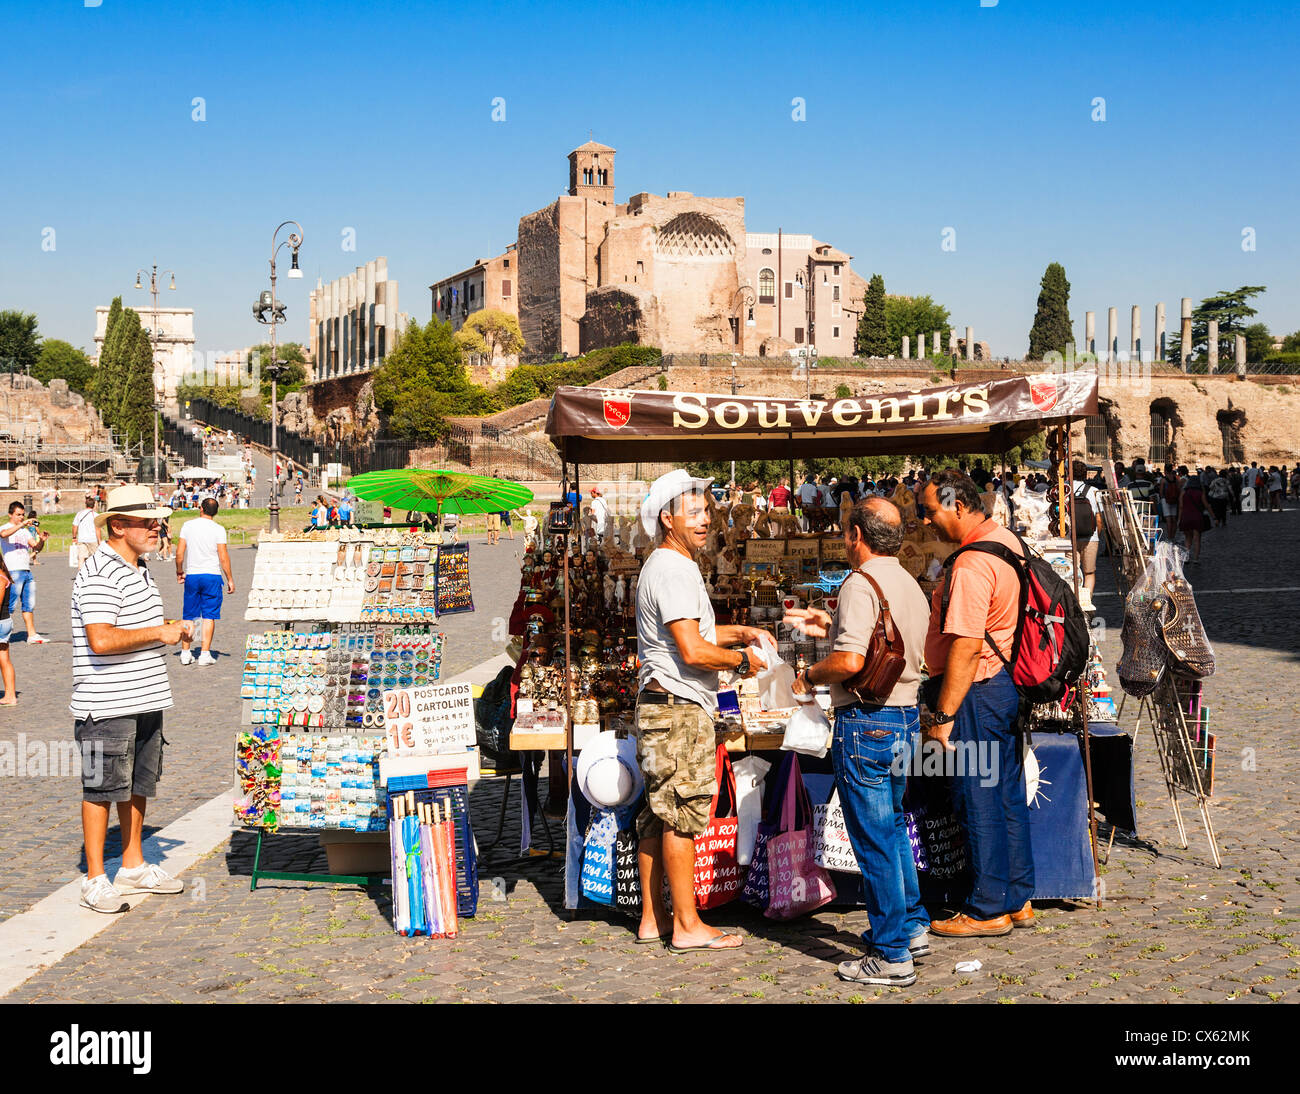 Straßenhändler verkaufen Souvenirs aus einem Stall inmitten der Ruinen des antiken Rom, Rom, Latium, Italien. Stockfoto